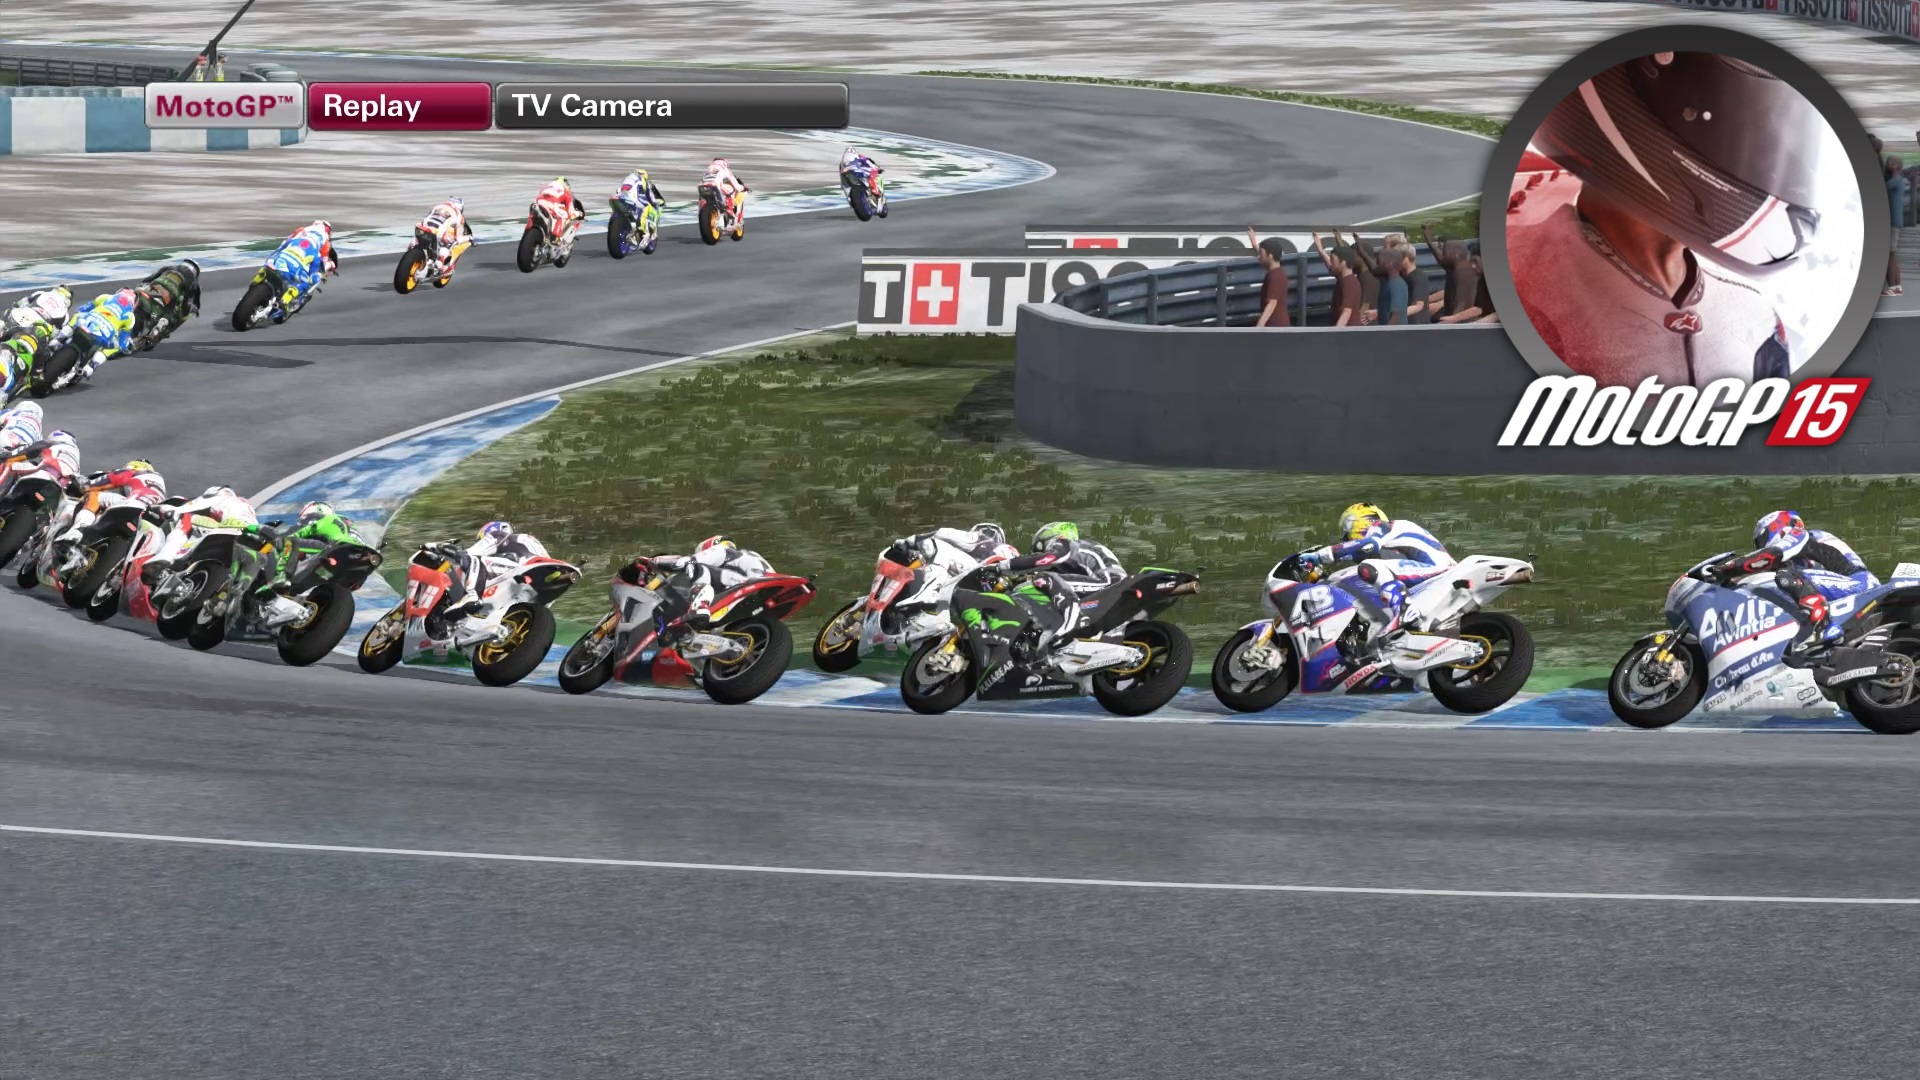 Honda - #04 Andalucia - Прохождение игры MotoGP15 | Dualshock 4